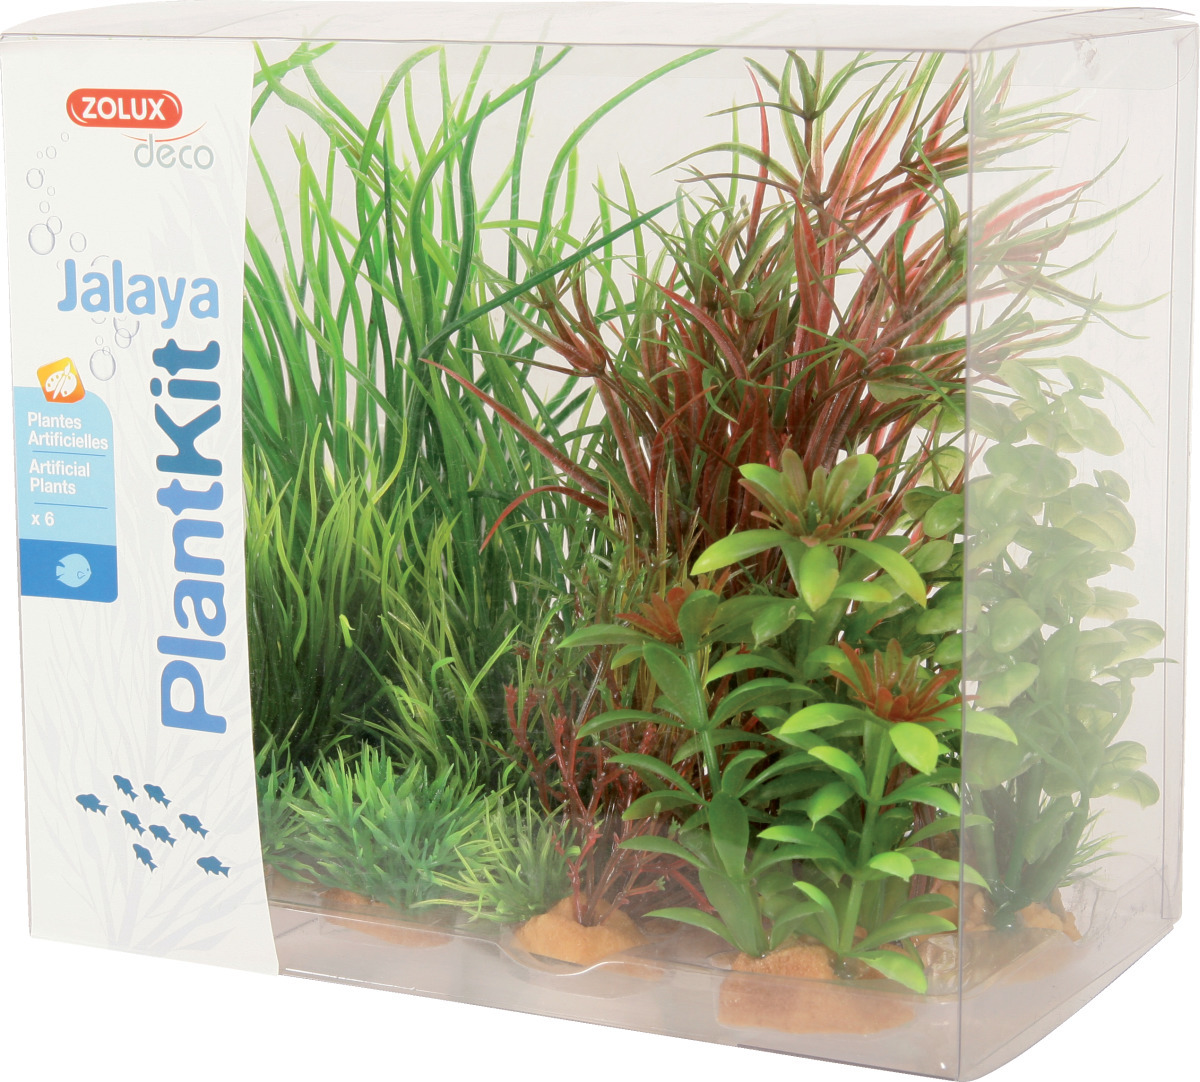 ZOLUX PlantKit Jalaya 4 - Lot de plantes artificielles pour aquarium